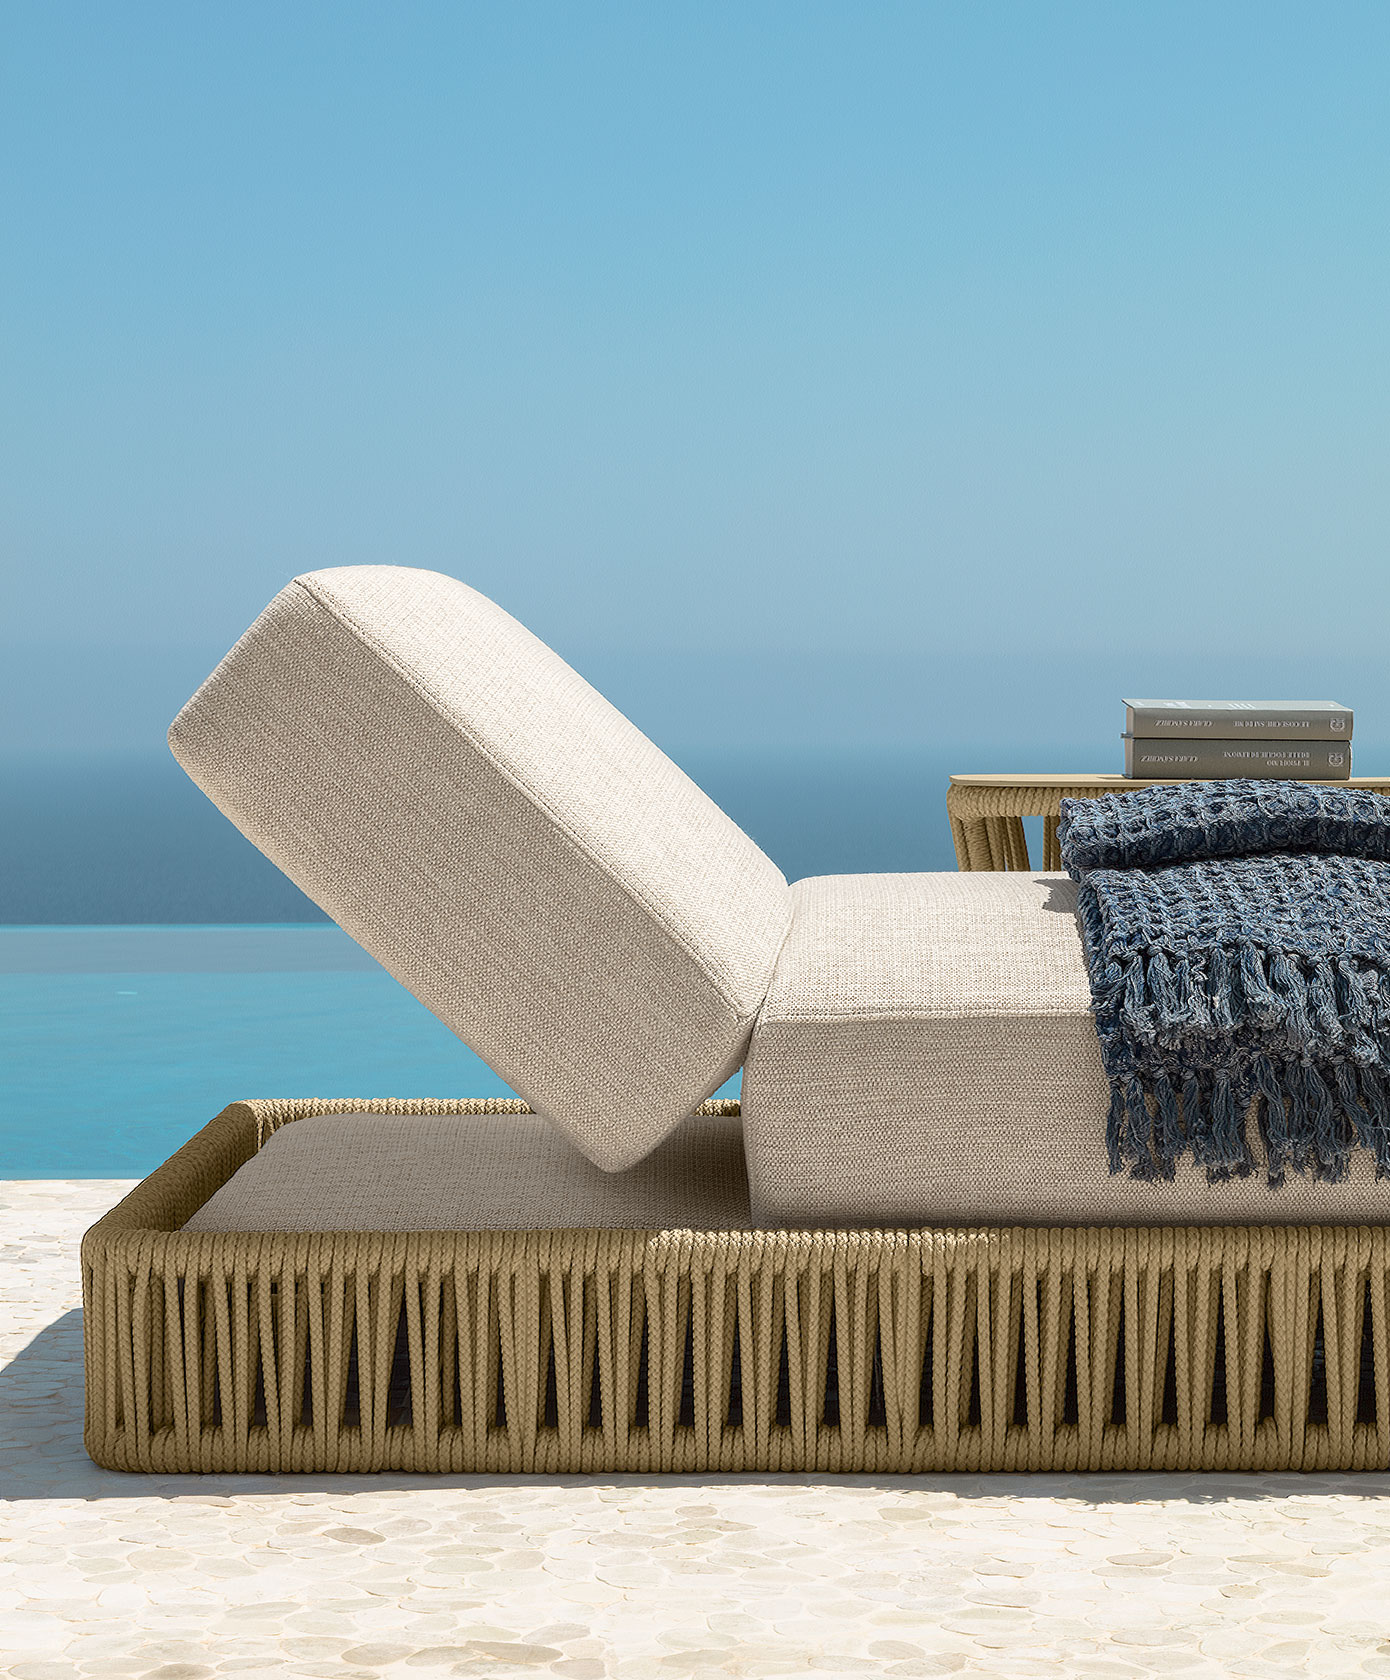 Chaise longue da esterno in aluminio e corda beige. Comprate online i nostri mobili da giardino design e di alta qualità con consegna gratuita.